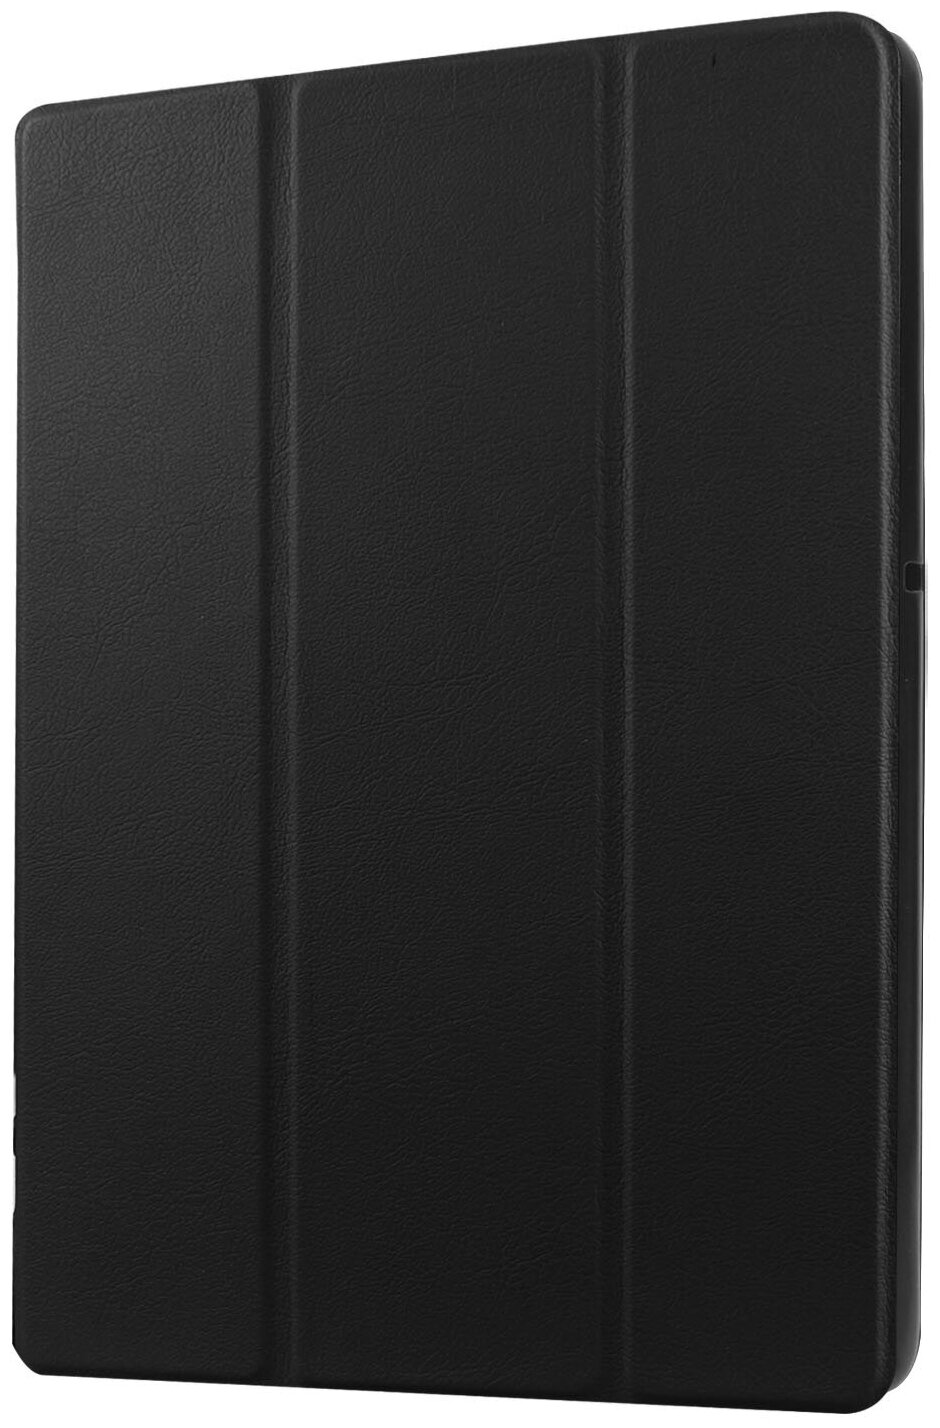 Чехол-обложка MyPads для Samsung Galaxy Tab E 8.0 SM-T377 тонкий умный кожаный на пластиковой основе с трансформацией в подставку черный